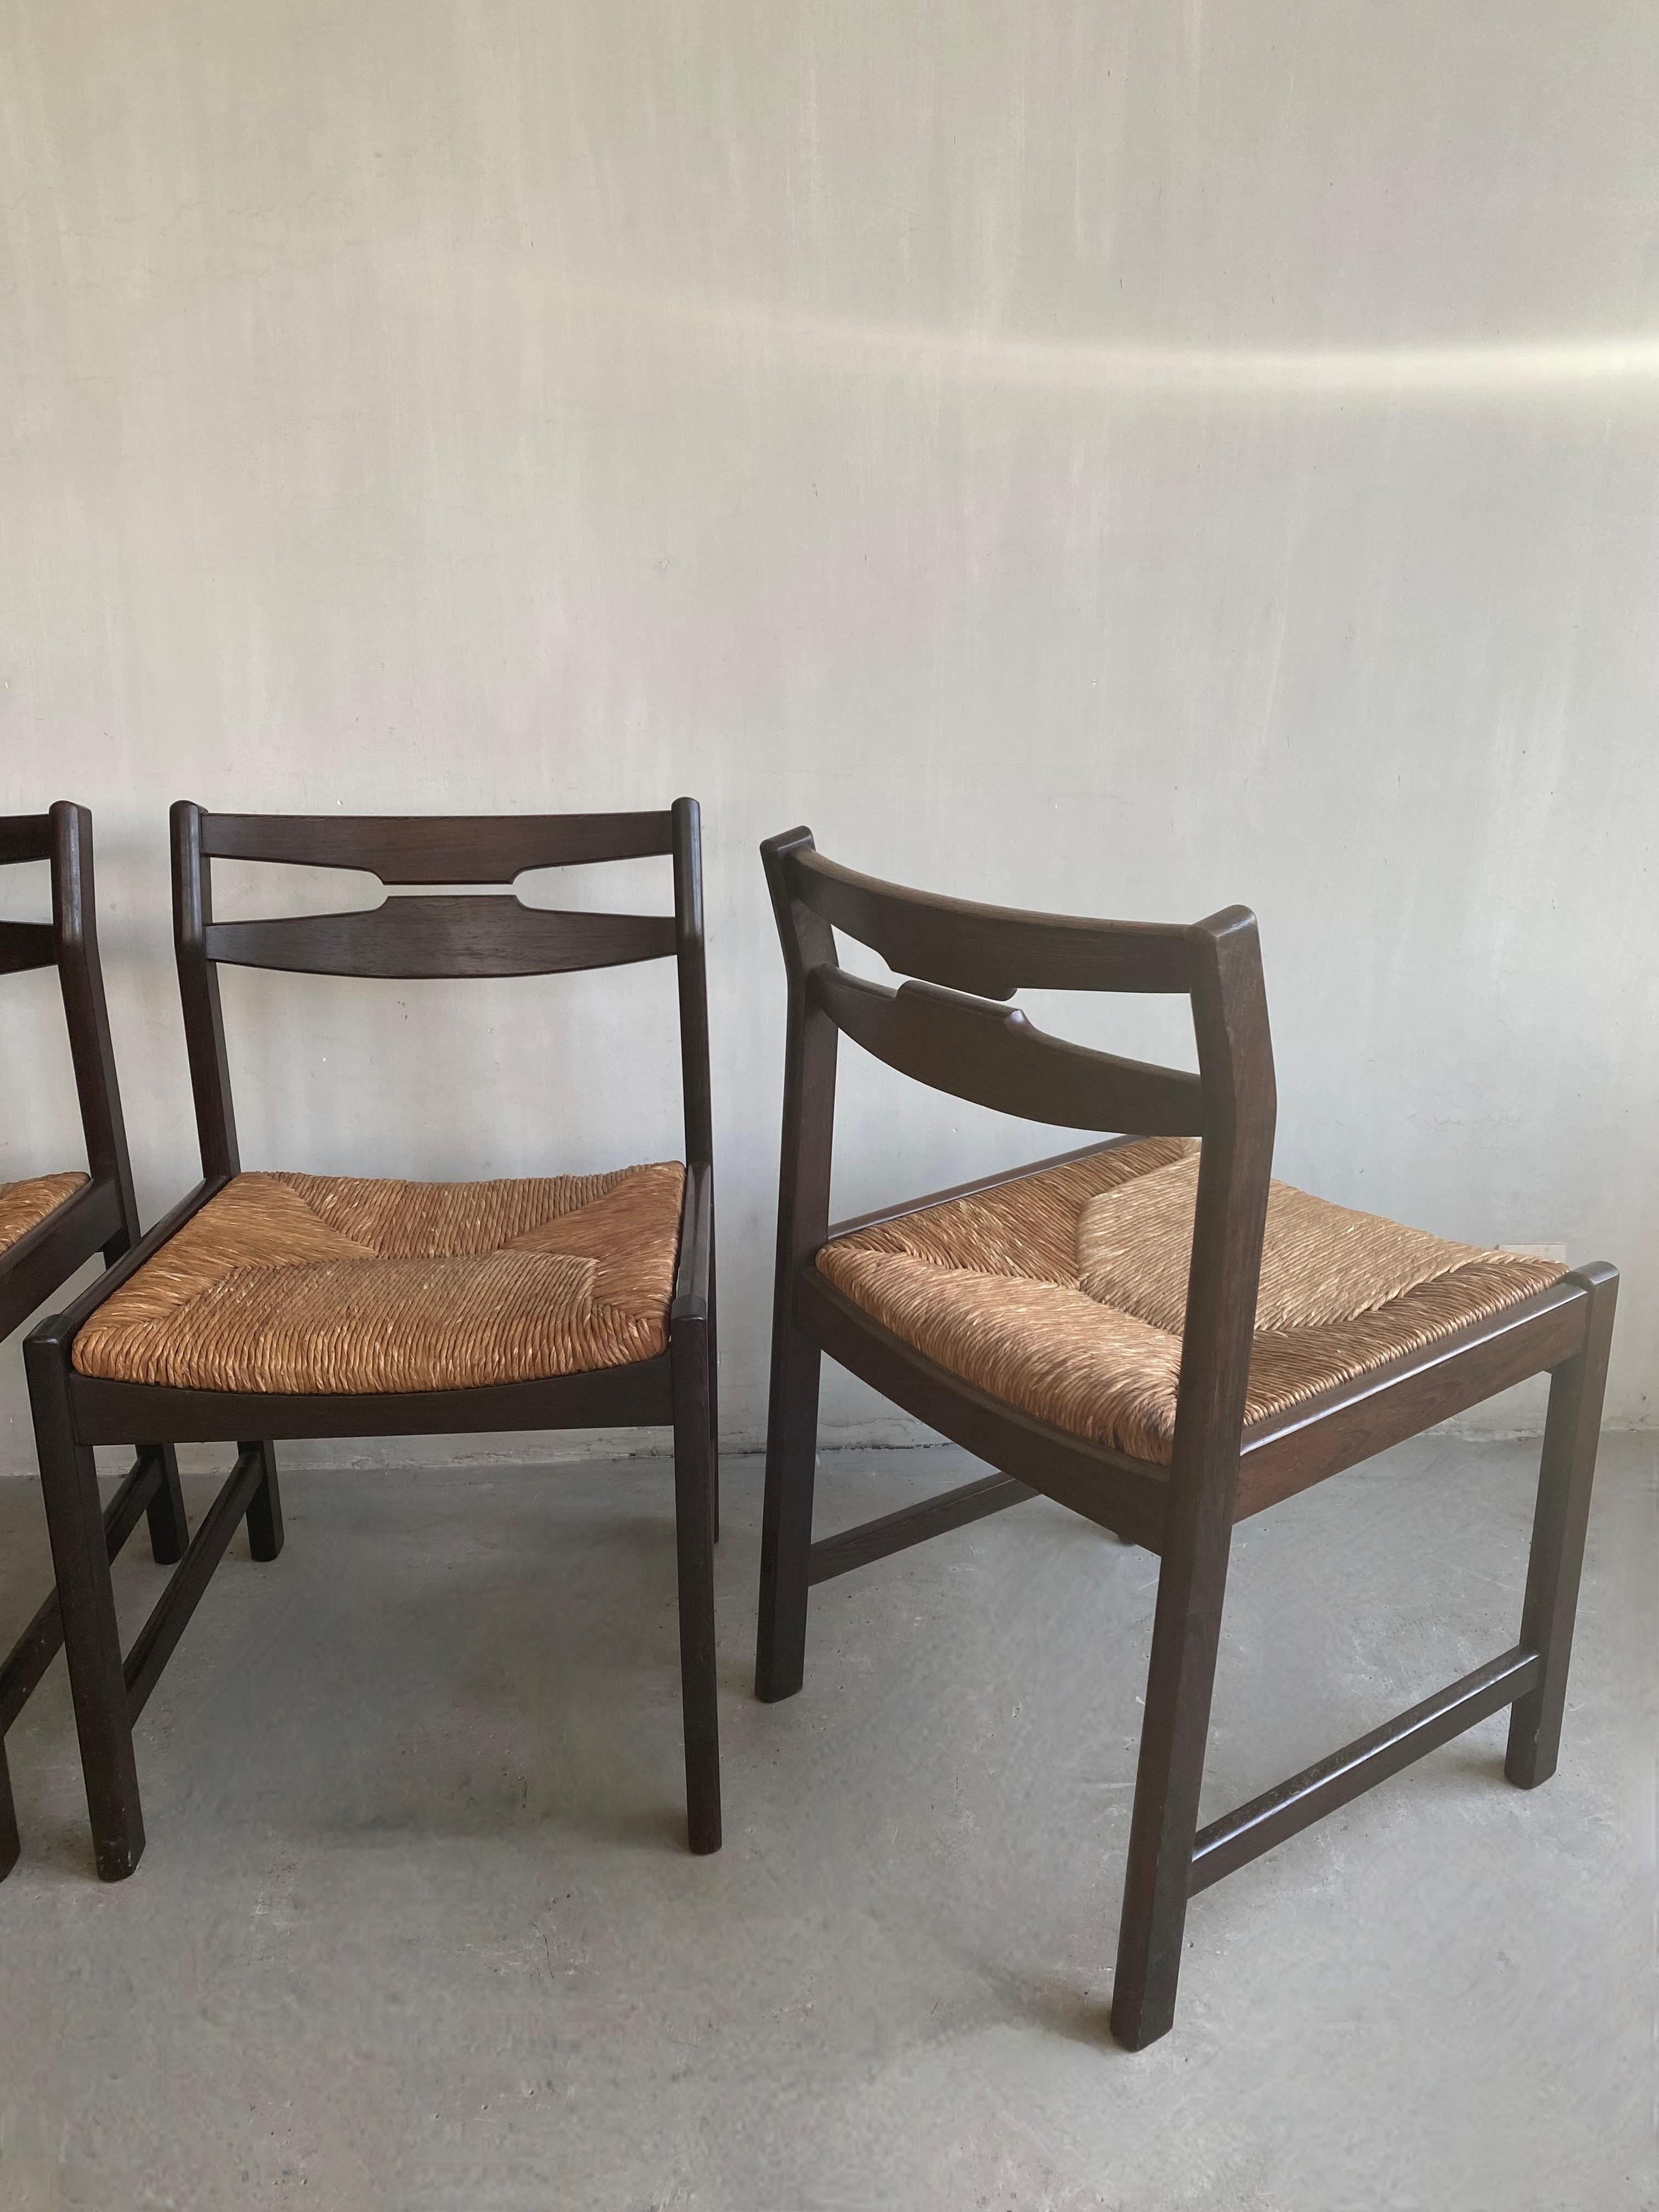 Vintage Stuhlset mit Korbgeflecht (4x) in perfektem Zustand aus den 1960er Jahren.
Sehr gute Sitzergonomie.
Die perfekte Balance zwischen Einfachheit und Sitzkomfort.
Schön zu kombinieren mit älteren Gegenständen, gibt Ruhe durch seinen schlichten